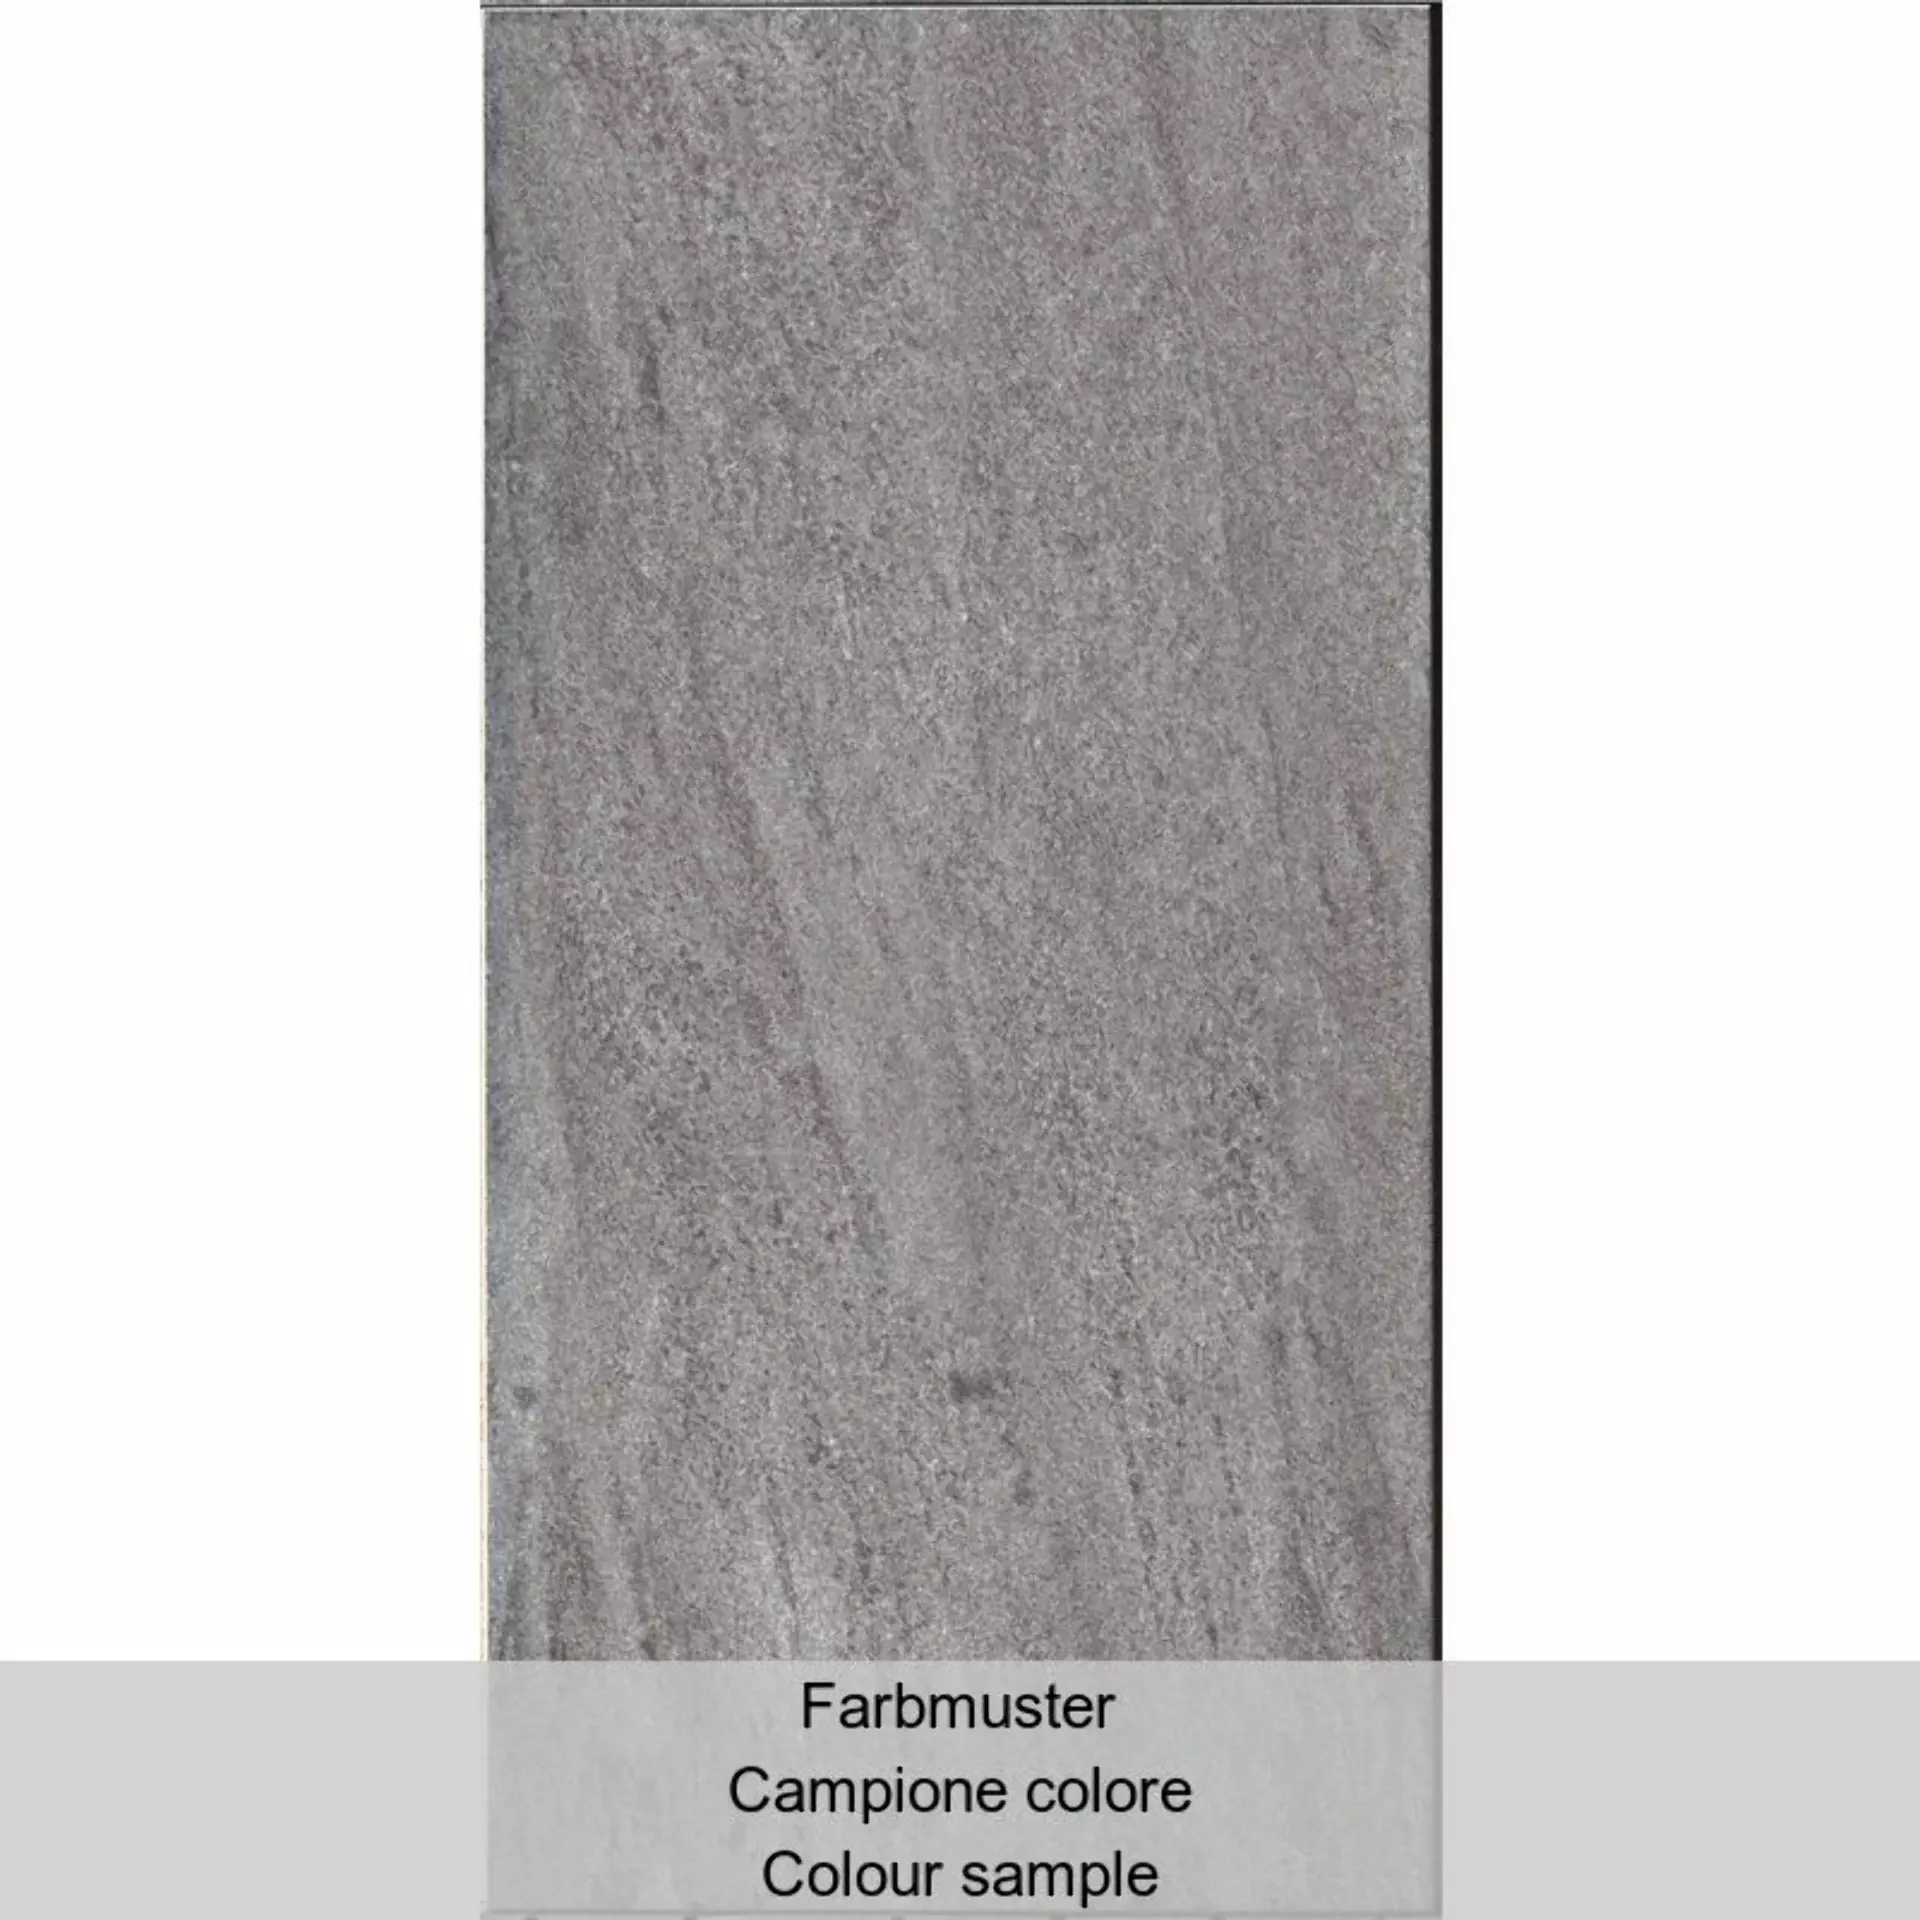 Casalgrande Terre Toscane Greve Naturale – Matt – Antibacterial 4795736 30x60cm rectified 9mm